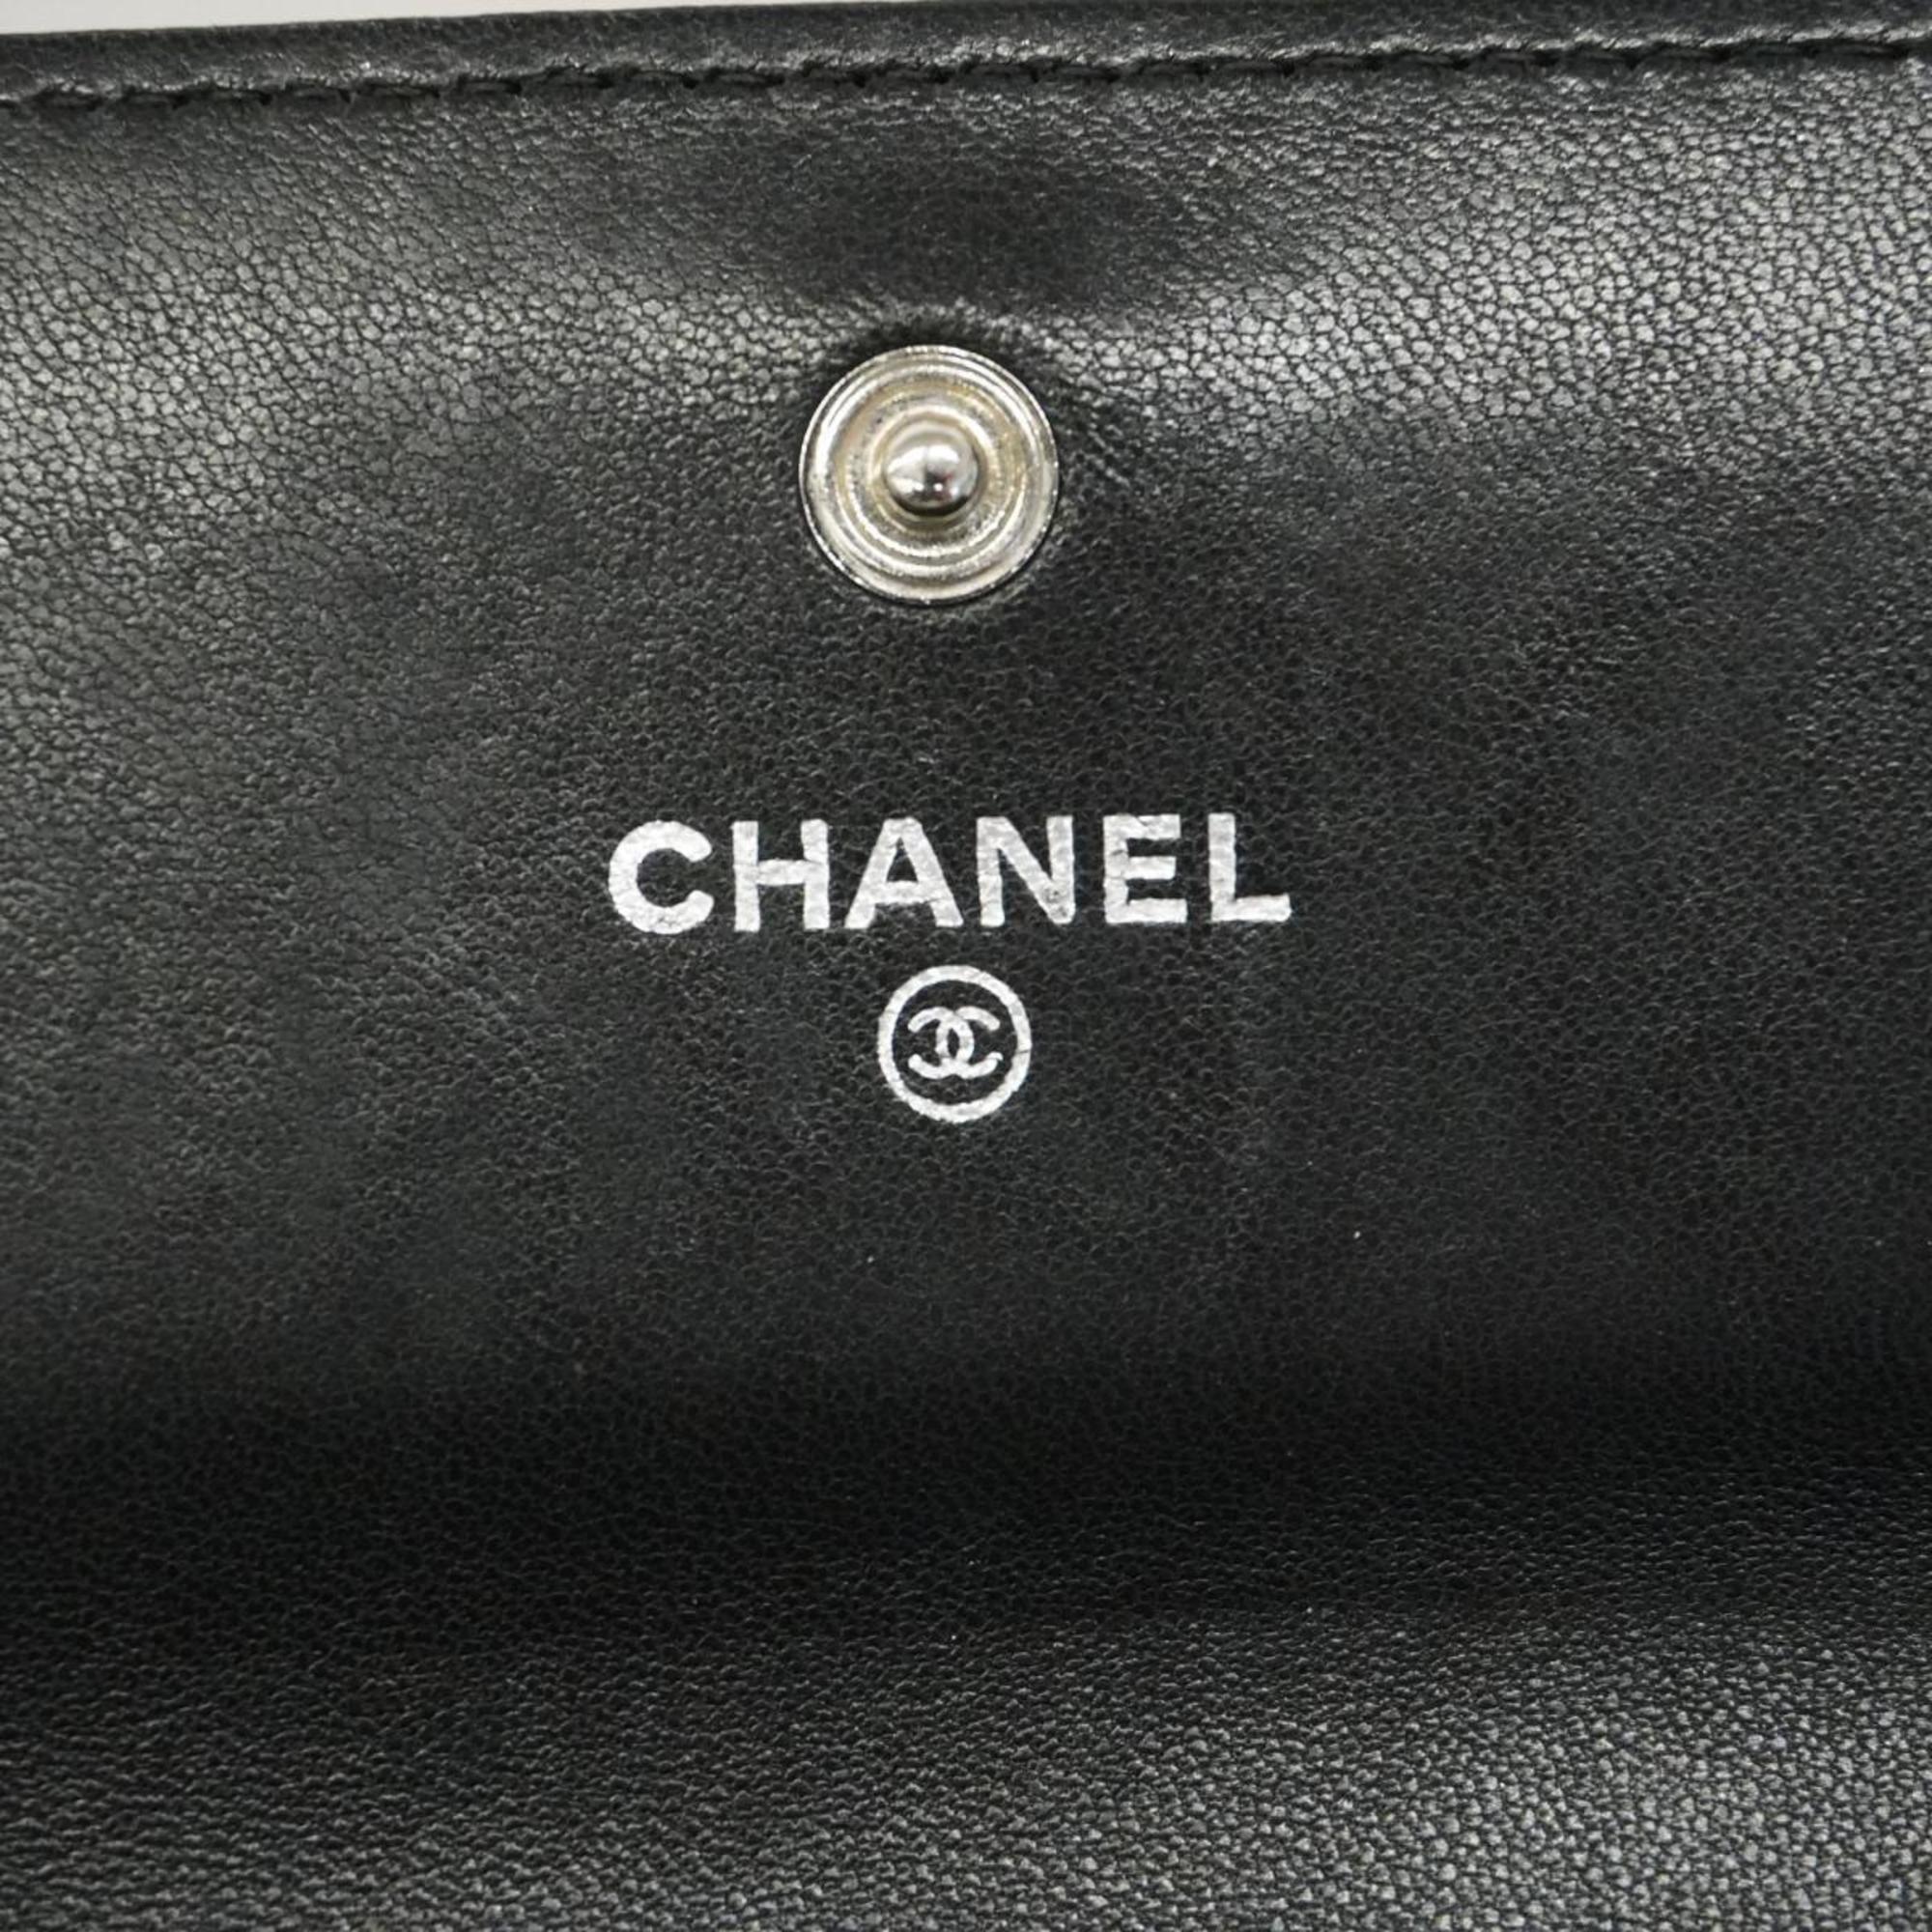 シャネル(Chanel) シャネル 長財布 カメリア ラムスキン ブラック   レディース